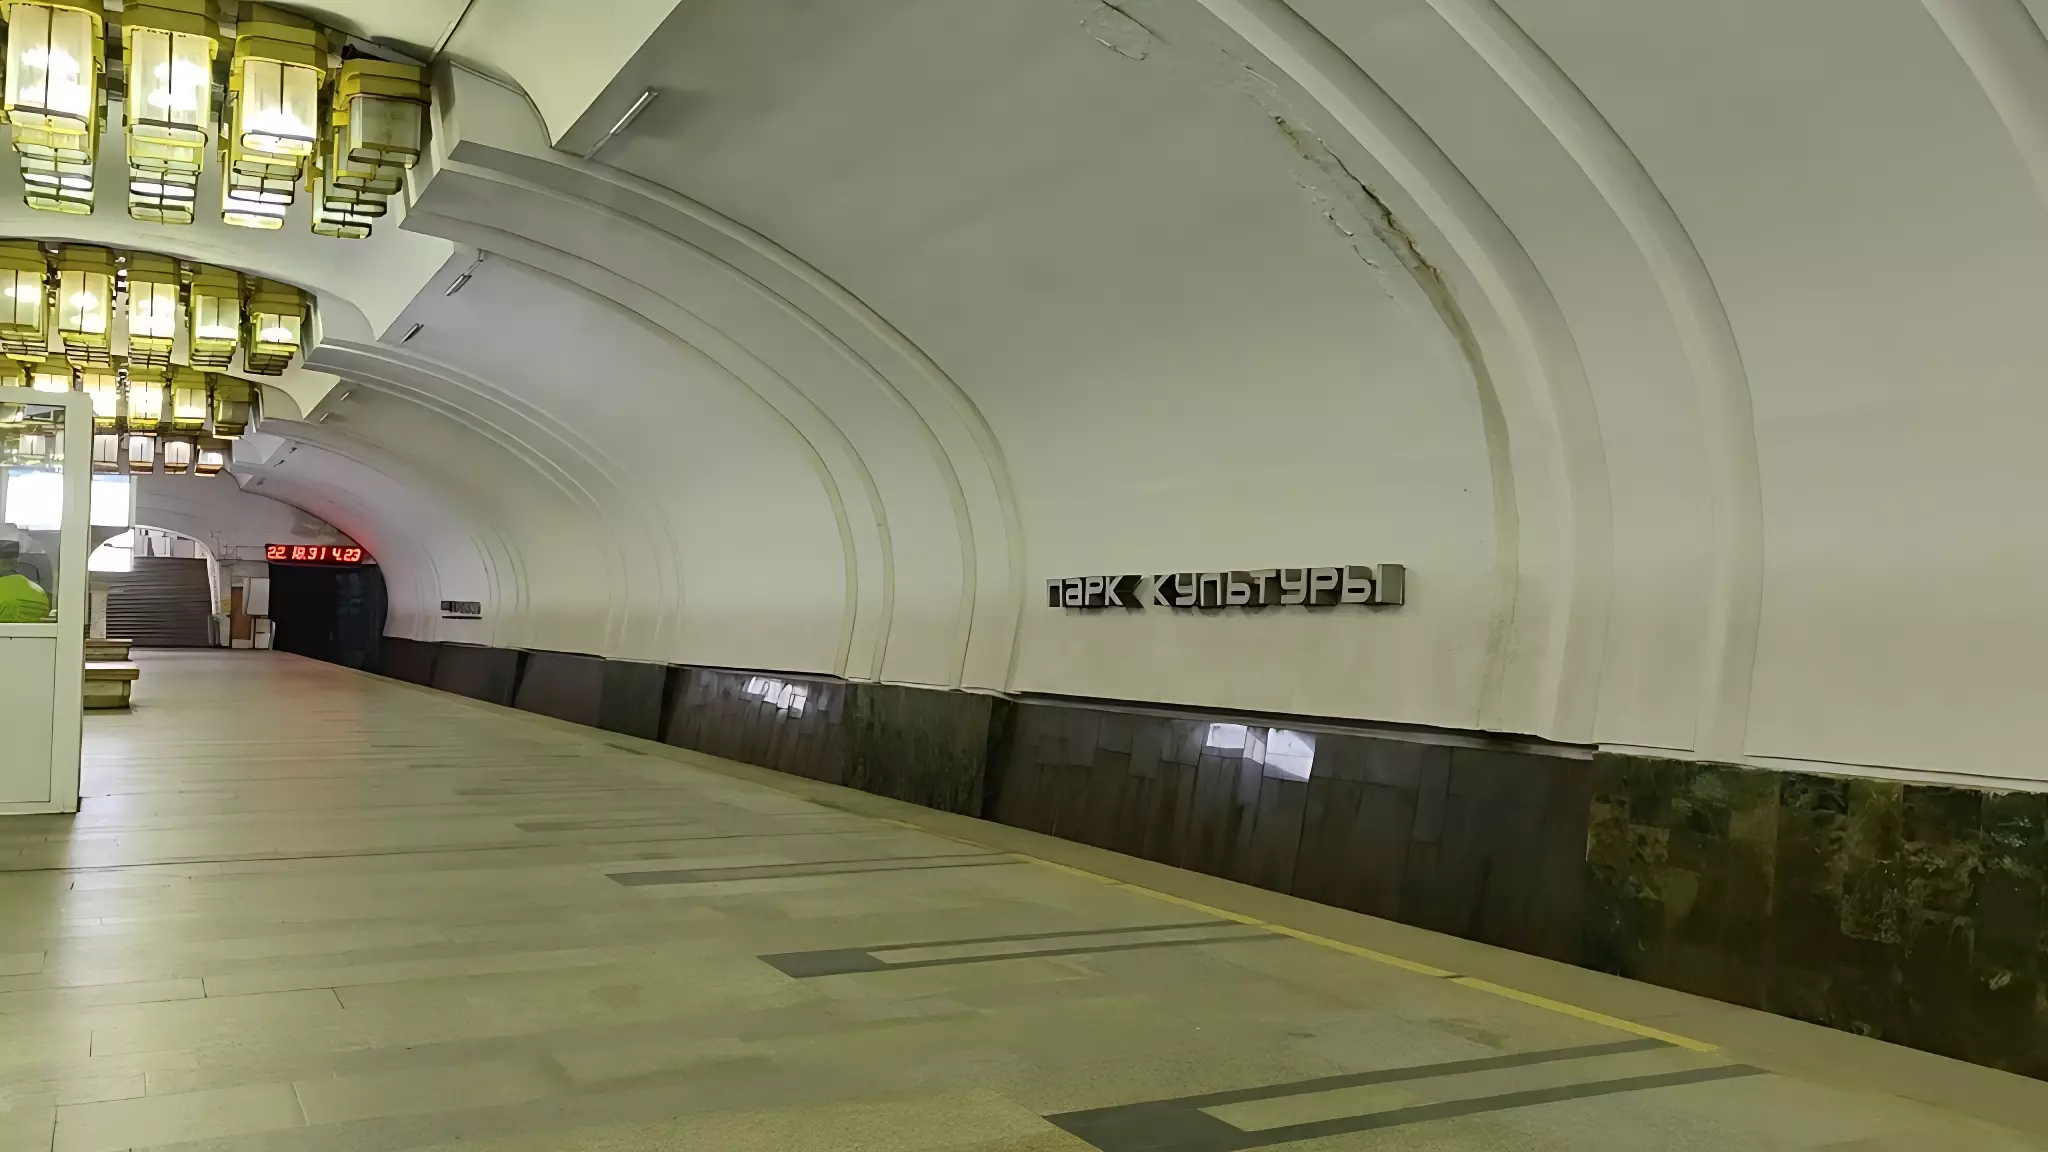 Оплату в метро по биометрии могут ввести в Нижнем Новгороде